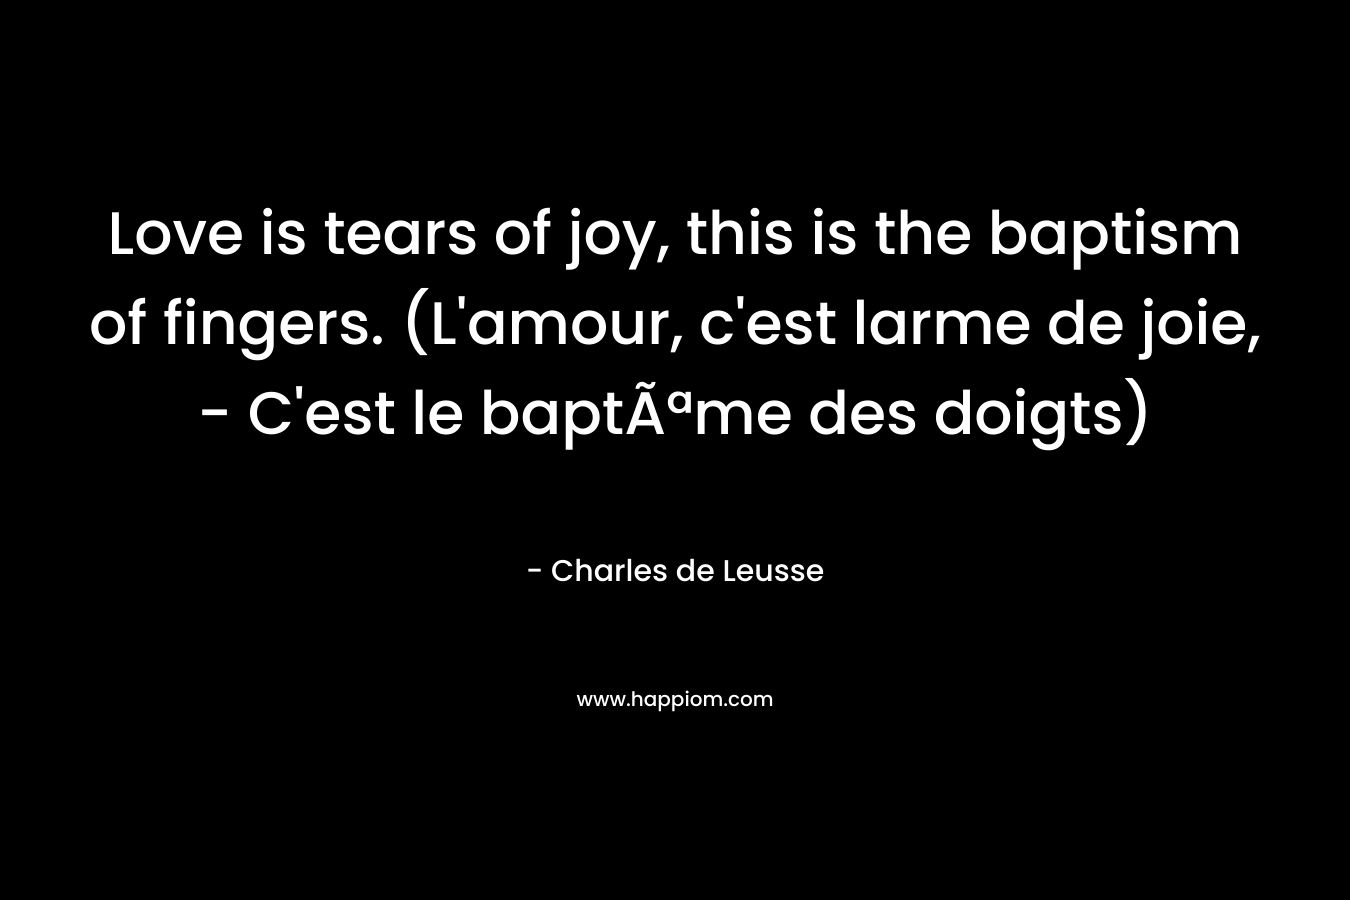 Love is tears of joy, this is the baptism of fingers. (L'amour, c'est larme de joie, - C'est le baptÃªme des doigts)